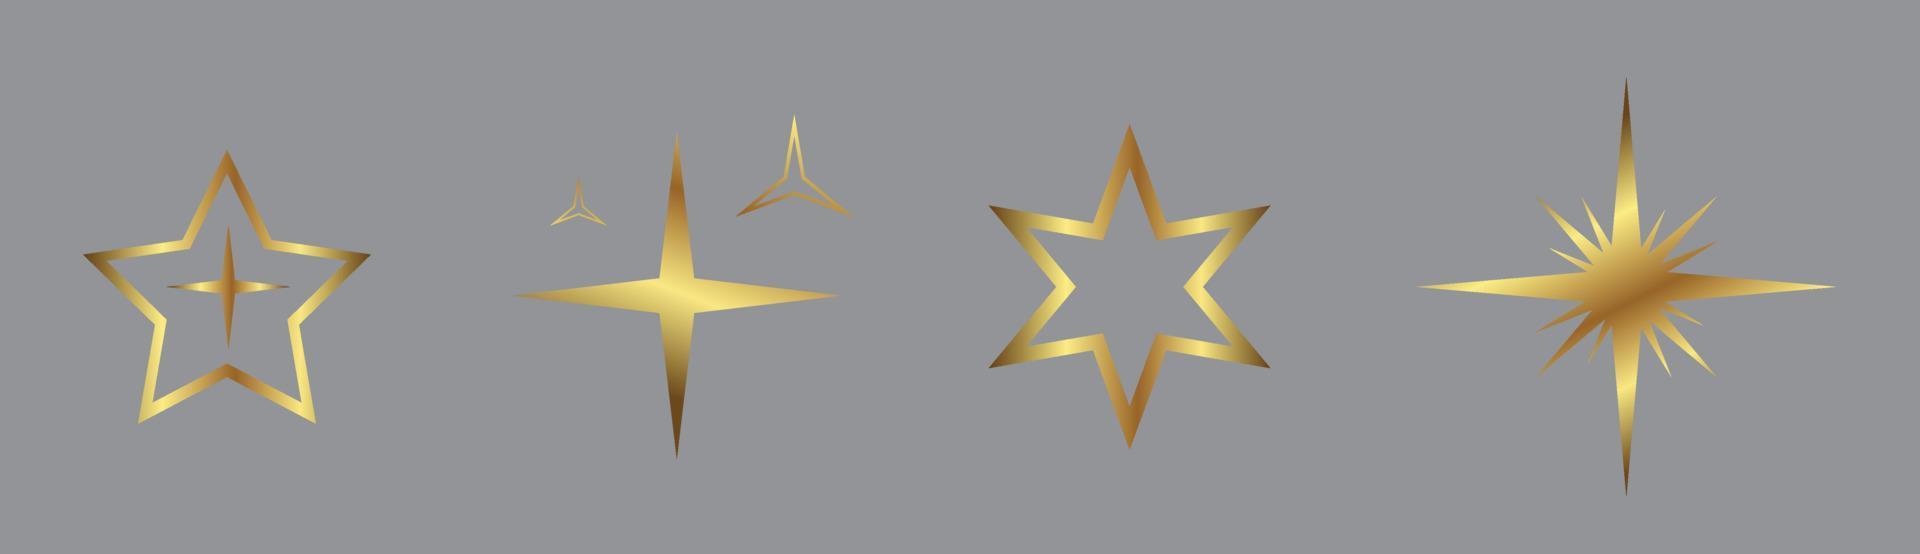 satz von goldenen sternen hellen und goldenen universum infografiken, sternlichtsymbol solarsymbol vektor